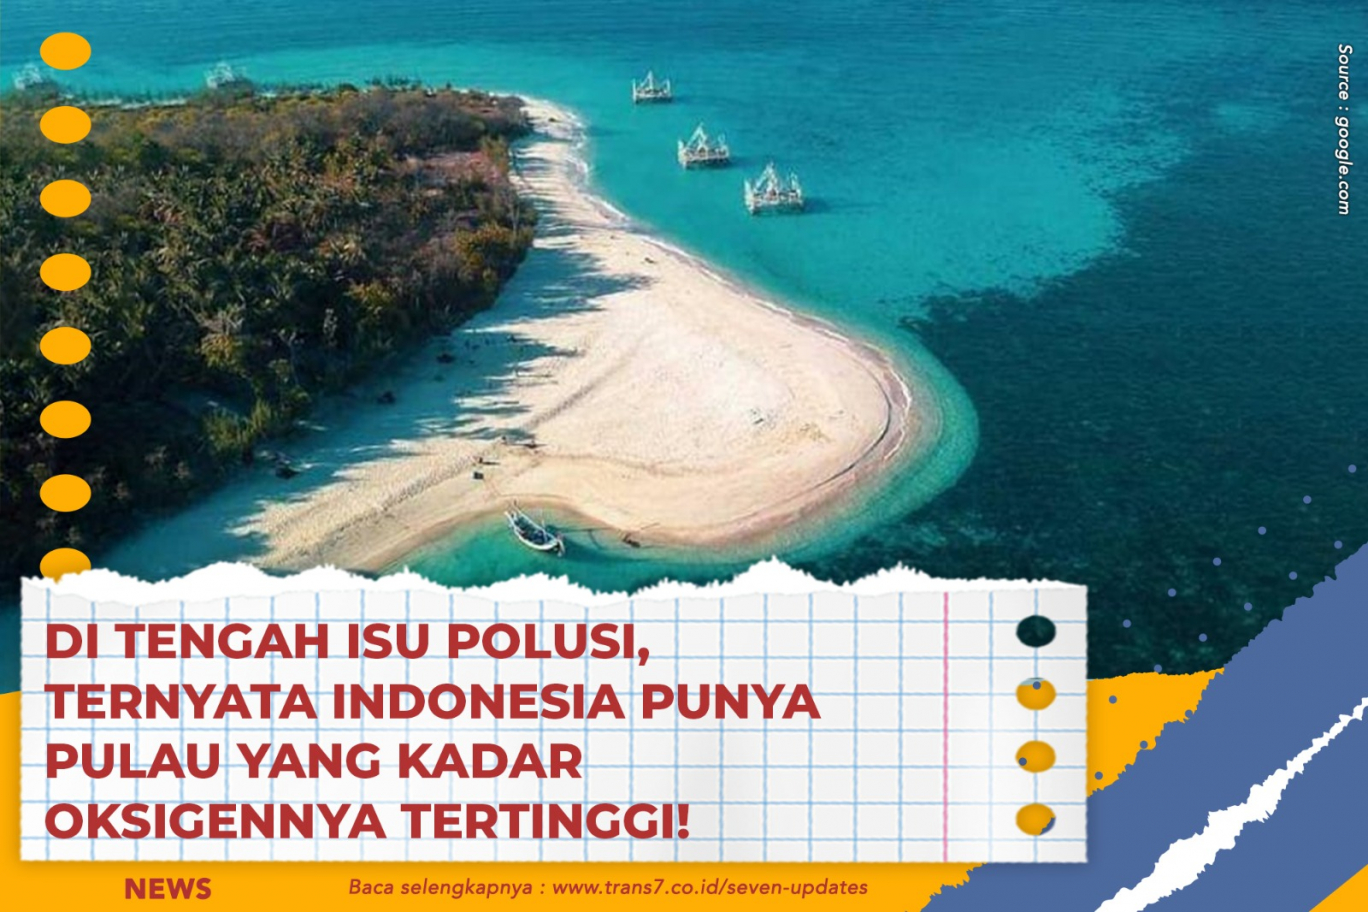 Di Tengah Isu Polusi, Ternyata Indonesia Punya Pulau Yang Kadar Oksigennya Tertinggi!